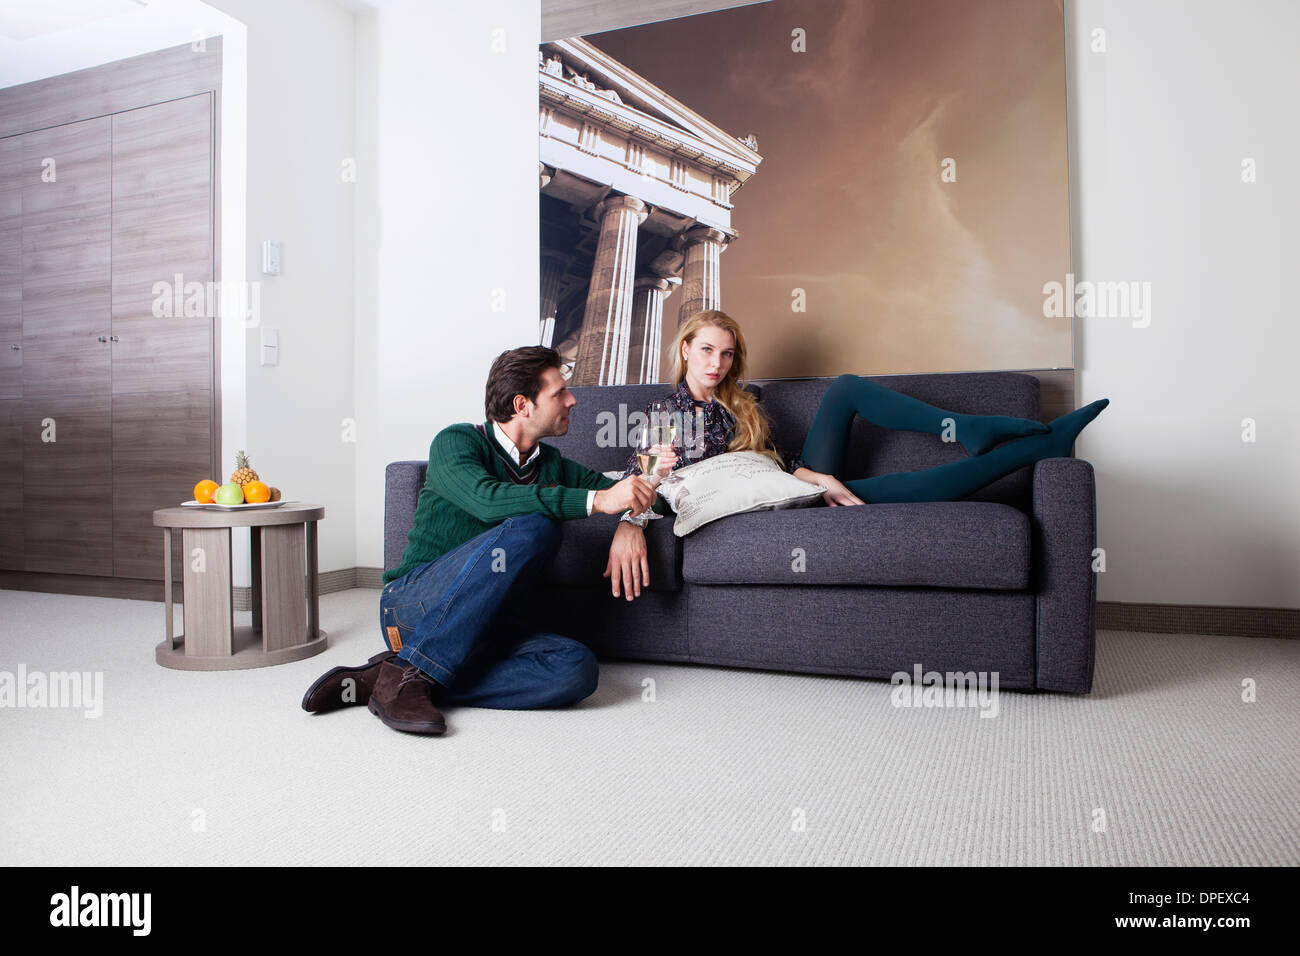 L'homme et la femme sur un canapé dans une chambre d'hôtel Banque D'Images